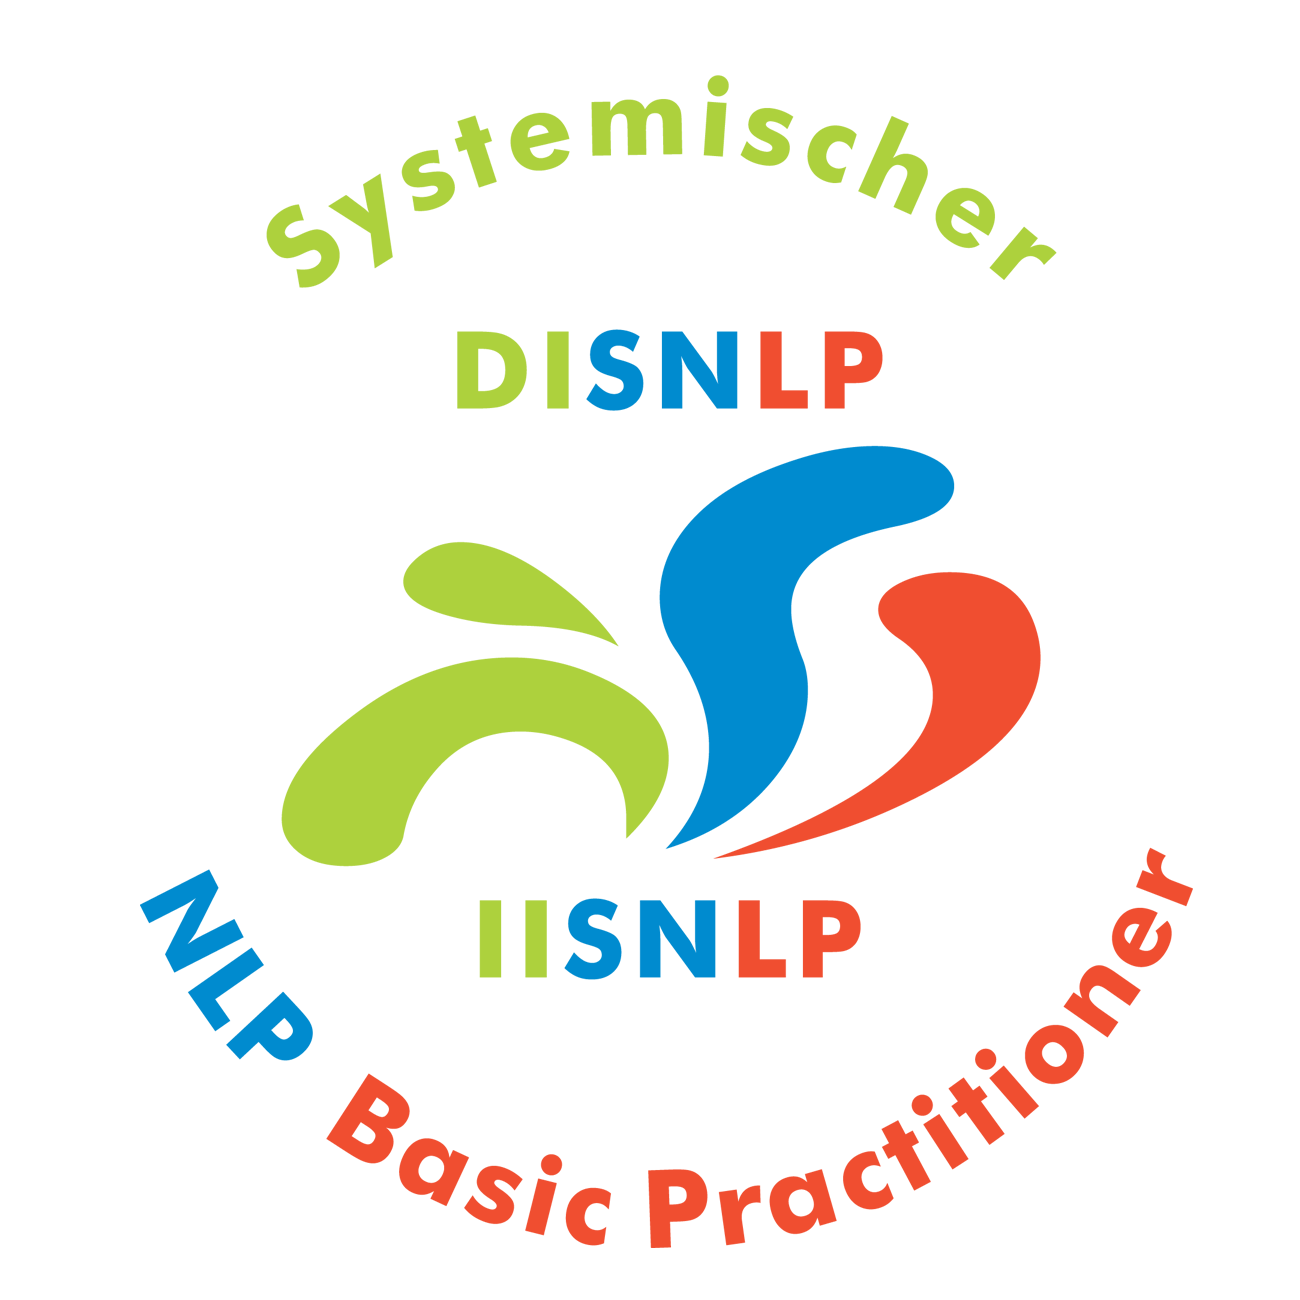 Seminar Selbstbewusstsein, Selbstvertrauen, Selbstwert, Selbstsicherheit stärken Ravensburg mit NLP Coaching Kurs für mehr Selbstbewusstsein